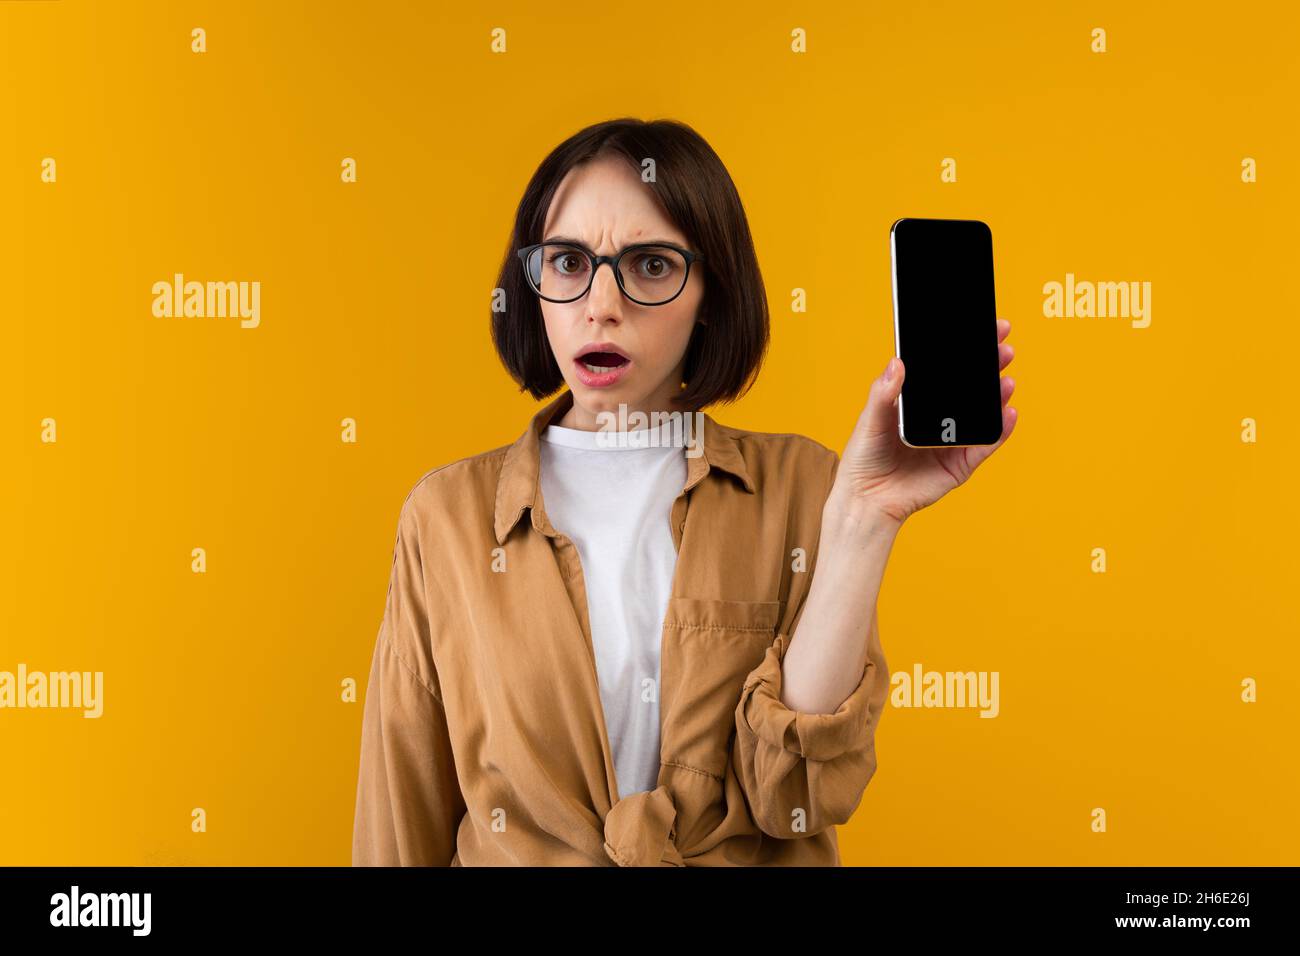 Insoddisfatto scioccato signora che tiene smartphone con schermo vuoto, mostrando app o sito web, essendo deluso, mockup Foto Stock